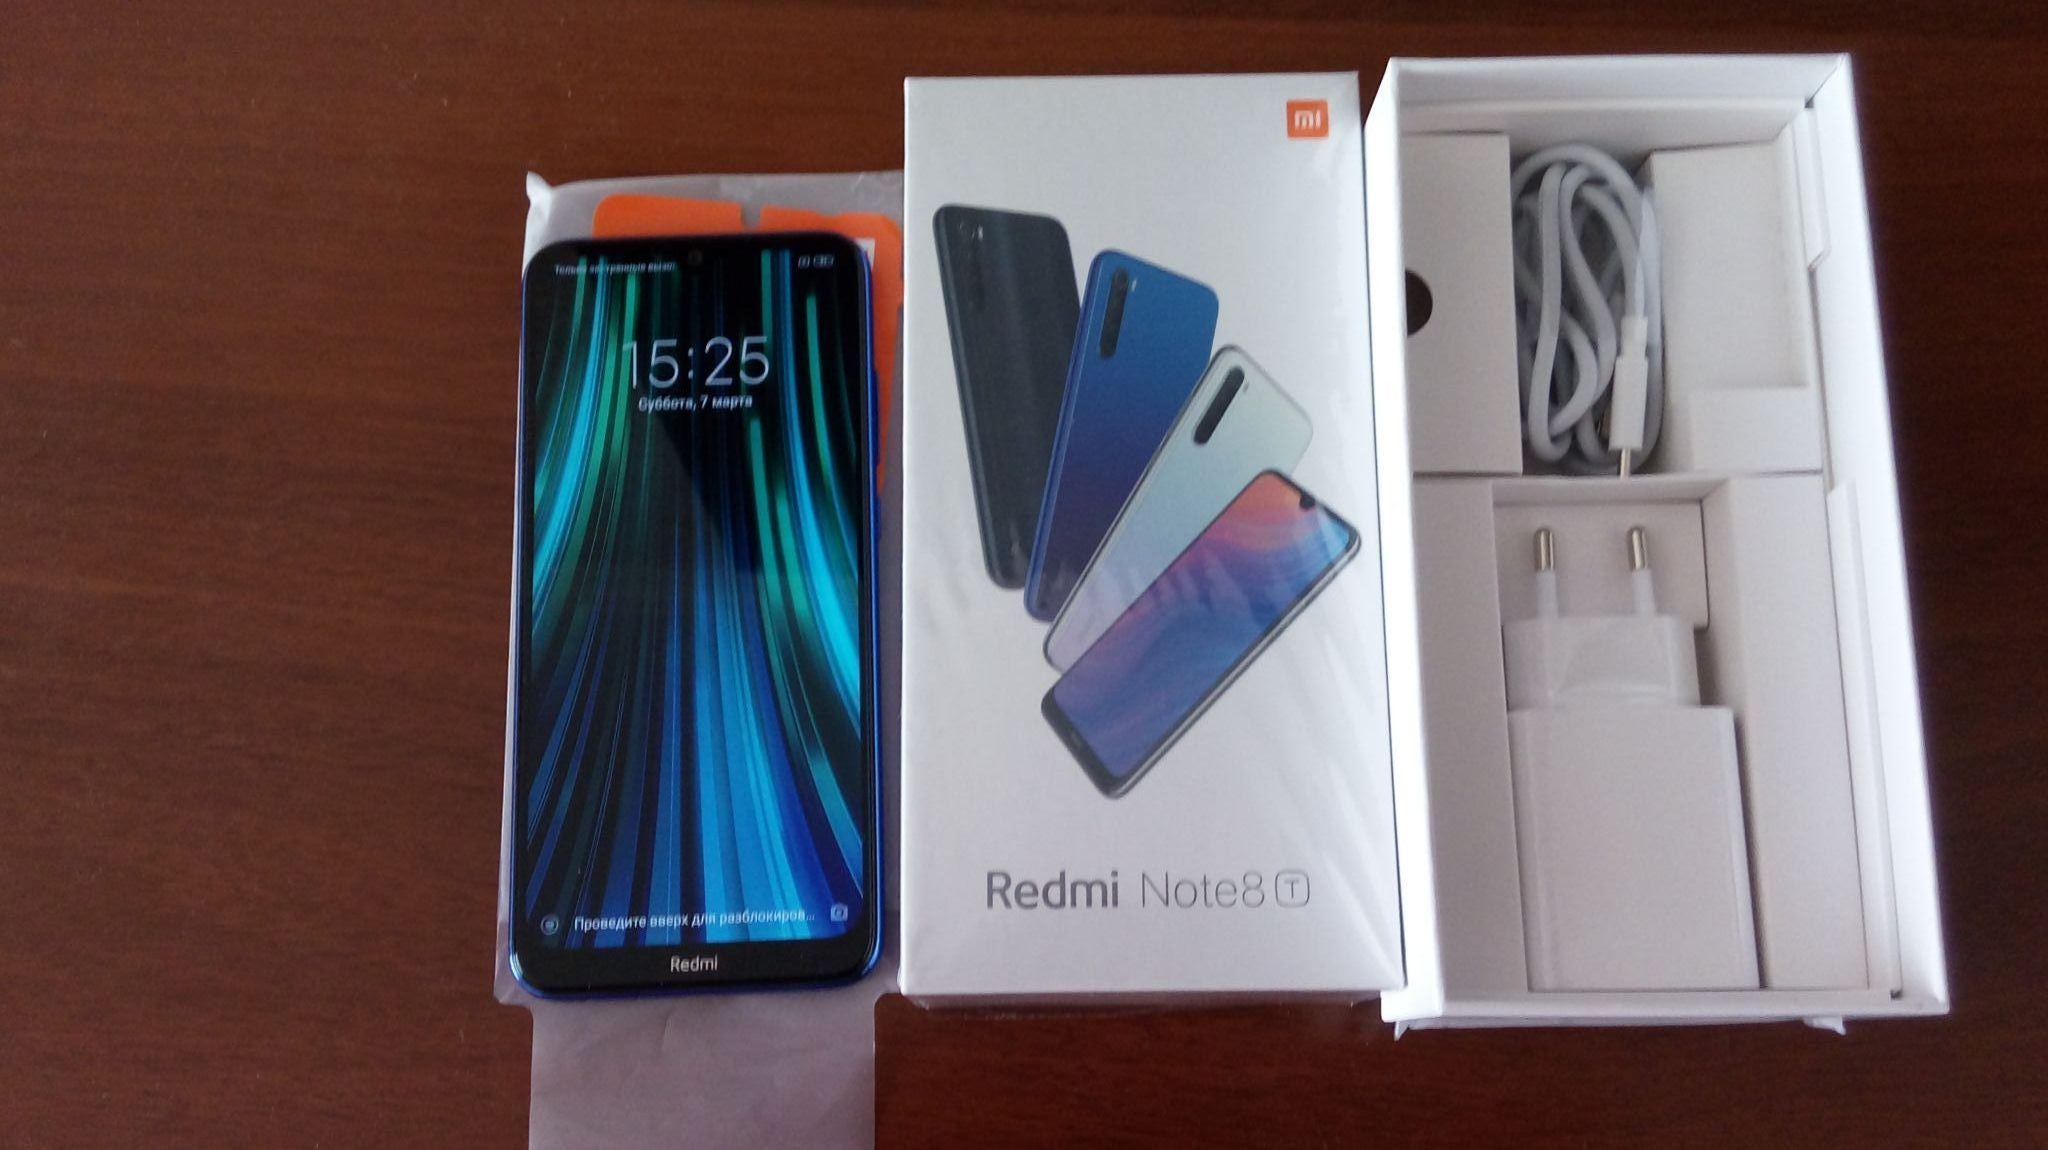 Xiaomi redmi note 3 64gb. Xiaomi Redmi Note 8 т. Xiaomi Redmi Note 8t 4/64gb. Смартфон Xiaomi Redmi Note 8 4/64 ГБ. Redmi Note 8t 32gb.